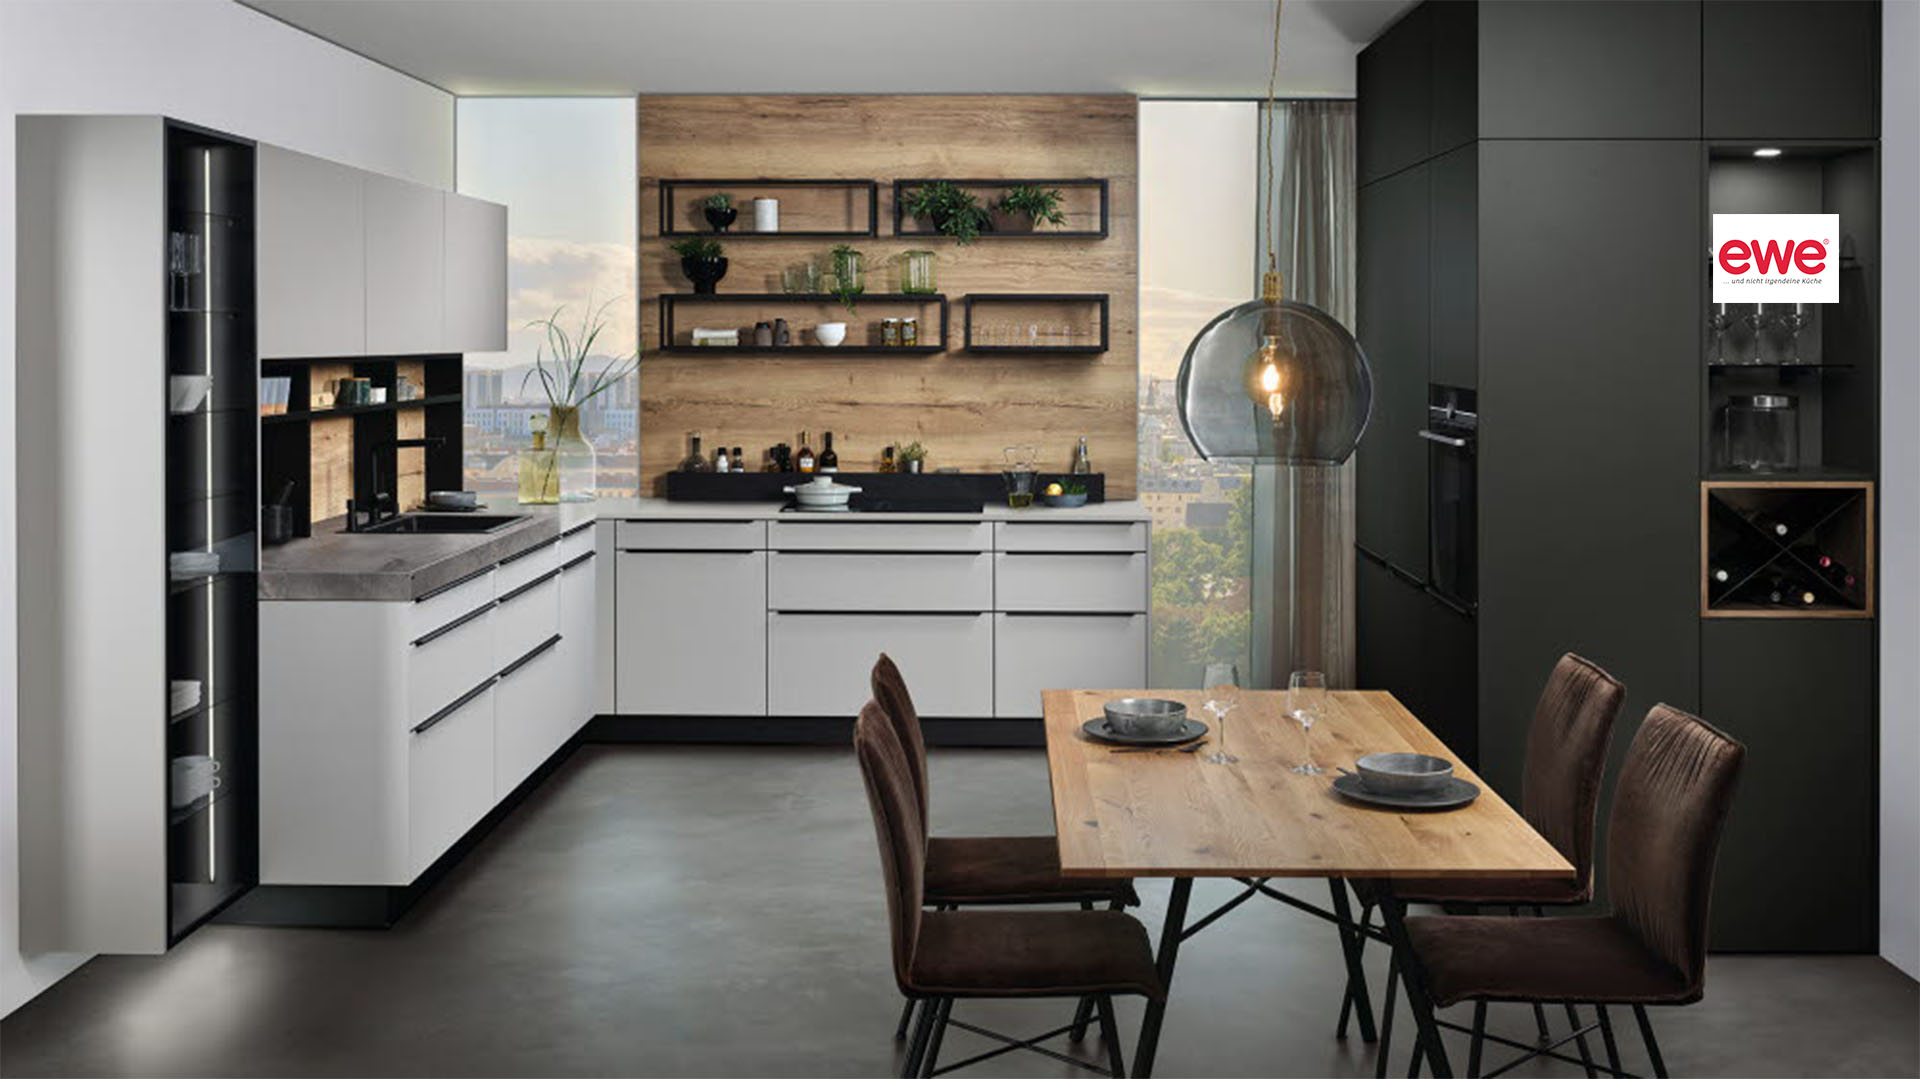 ewe Küche modern Holz Küchenwelt Leoben